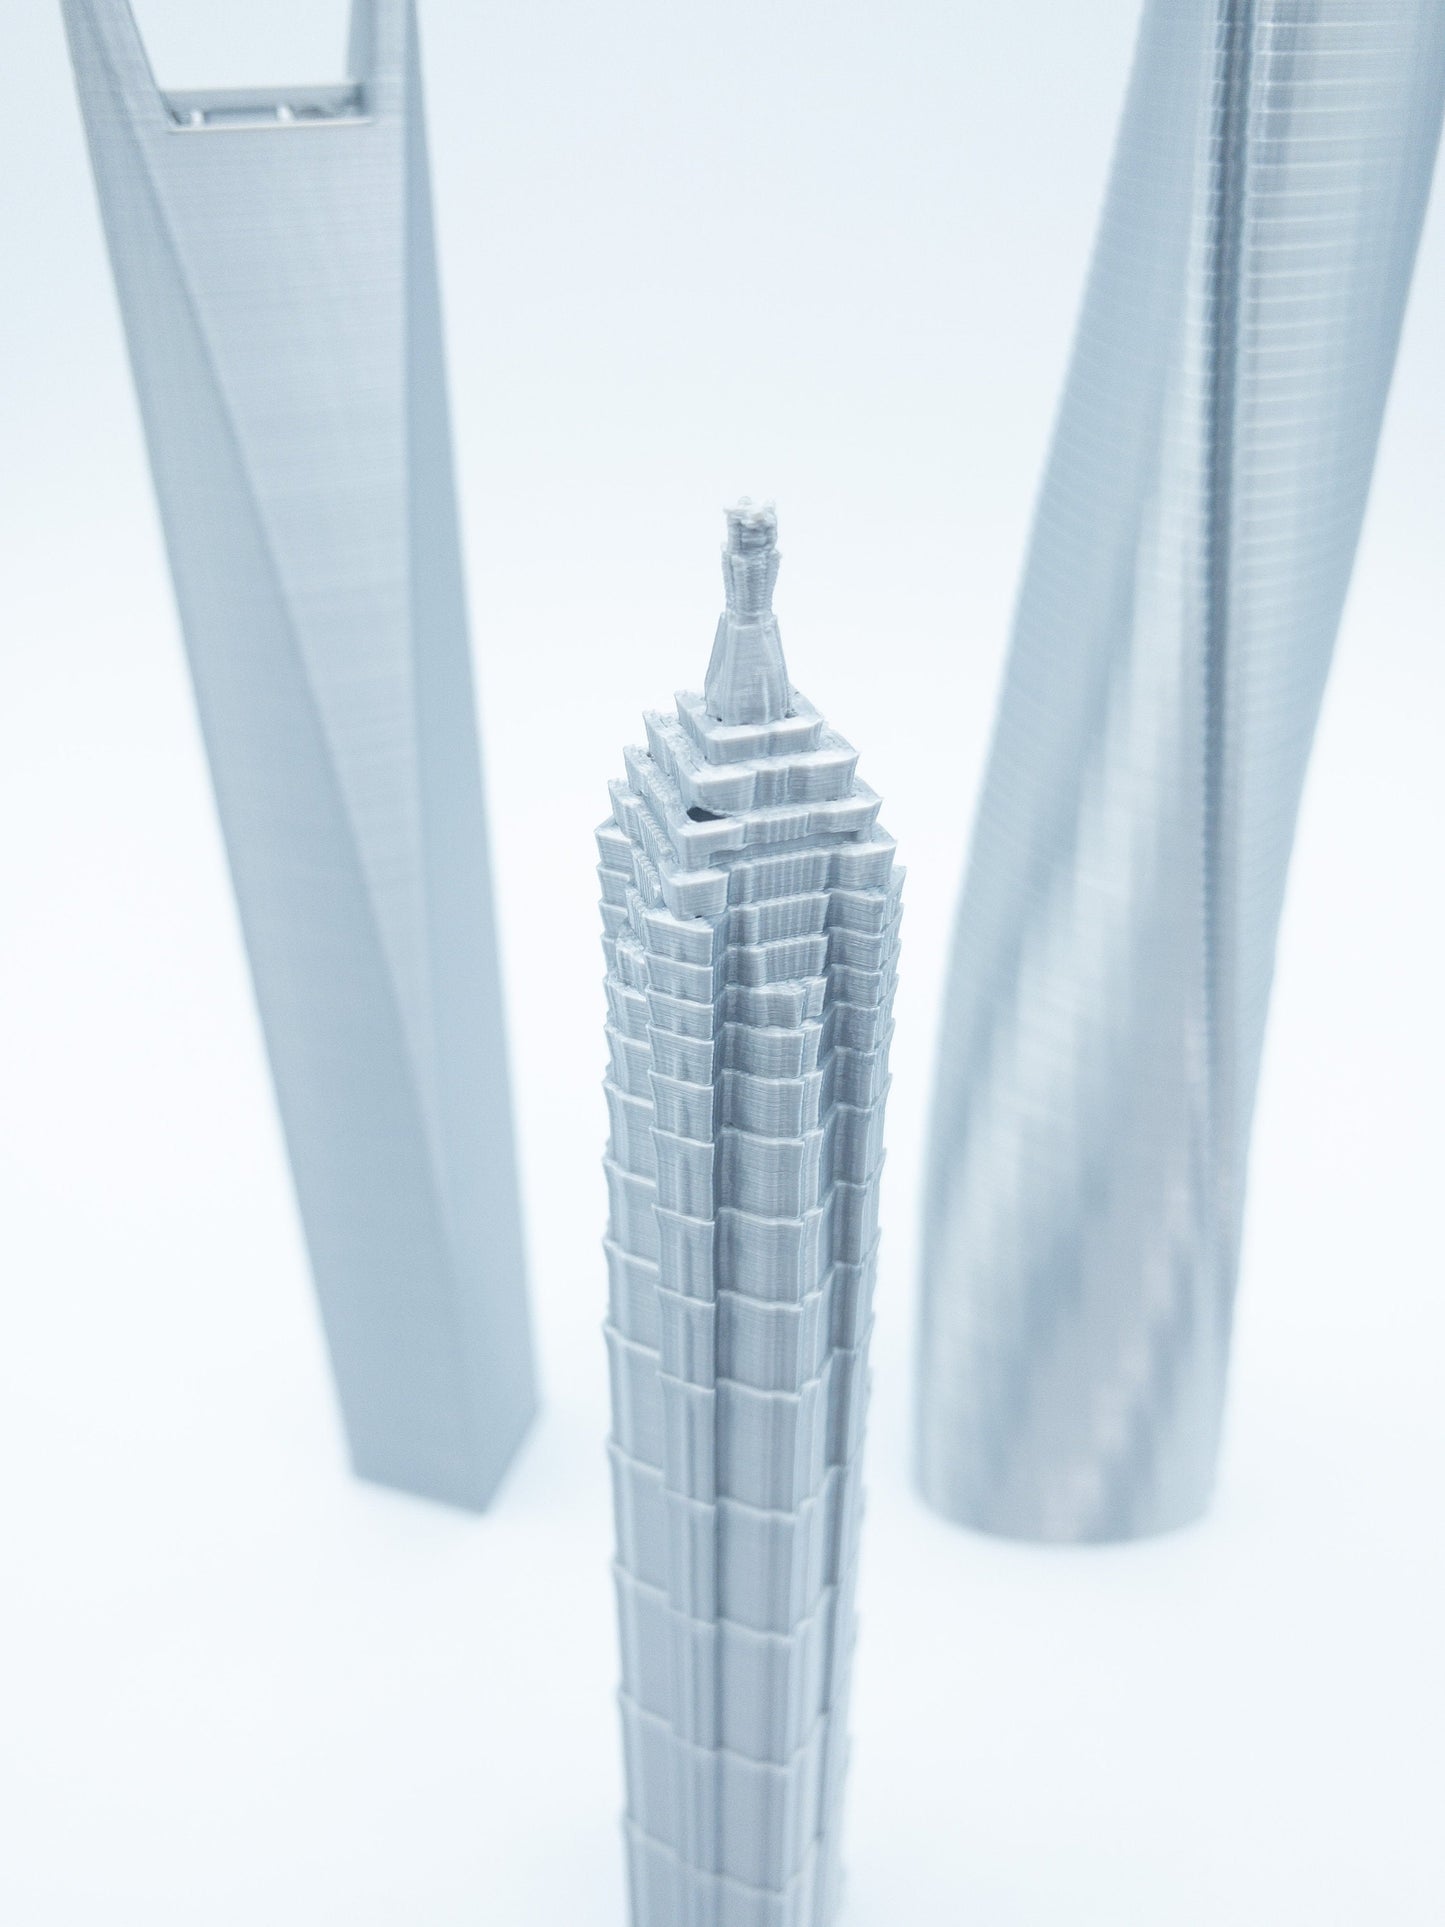 Shanghai Skyscraper Models- 3D Printed 3 Pack